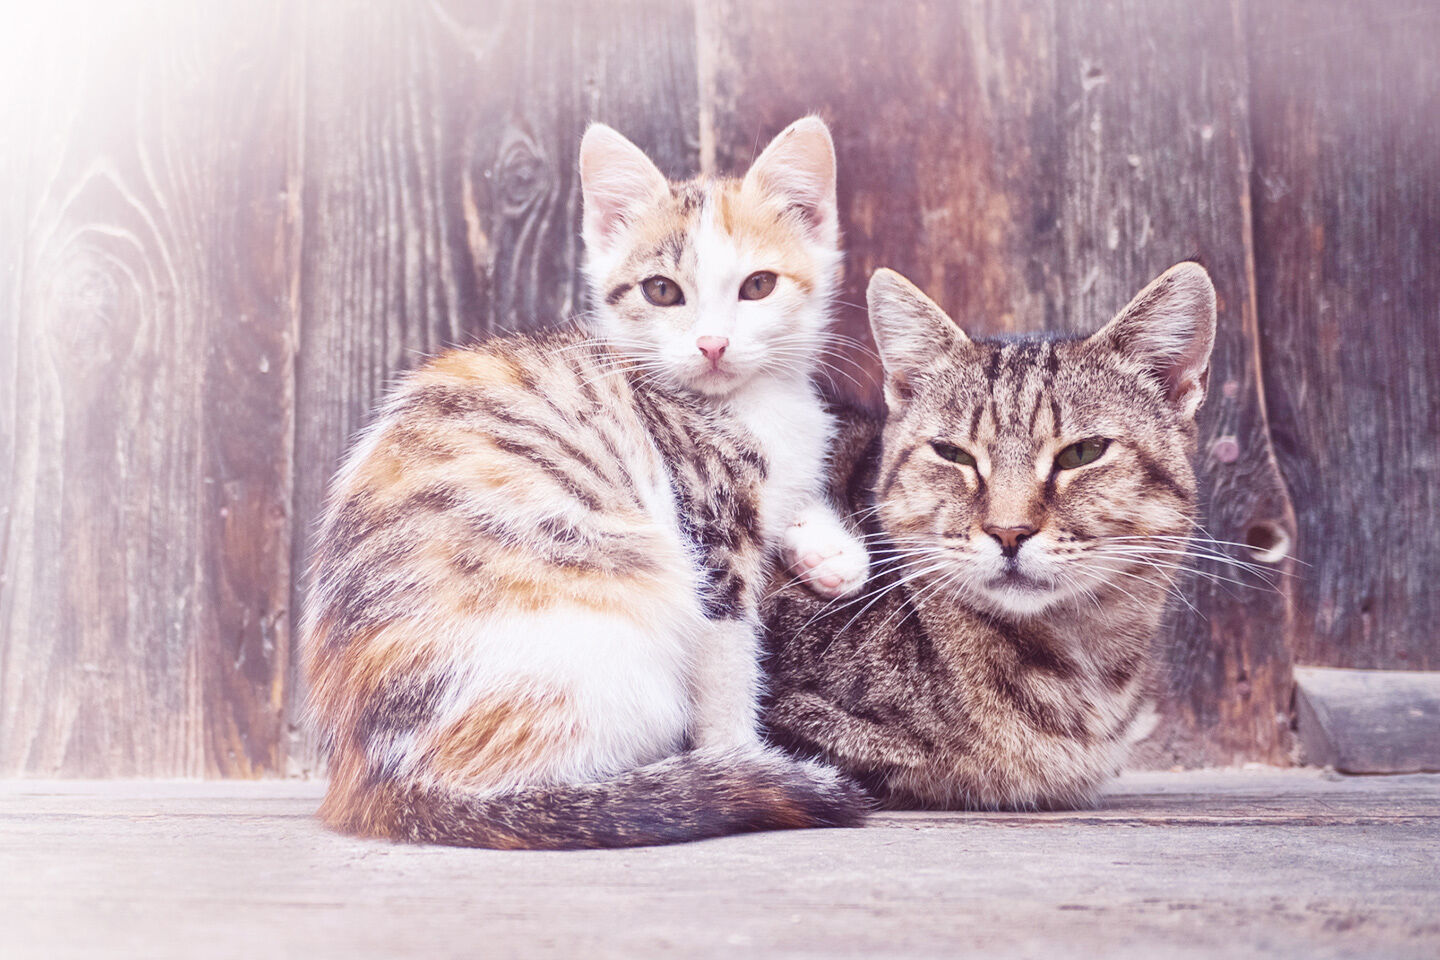 Mutterkatze und Tochterkatze sitzen gemeinsam vor einer Scheune